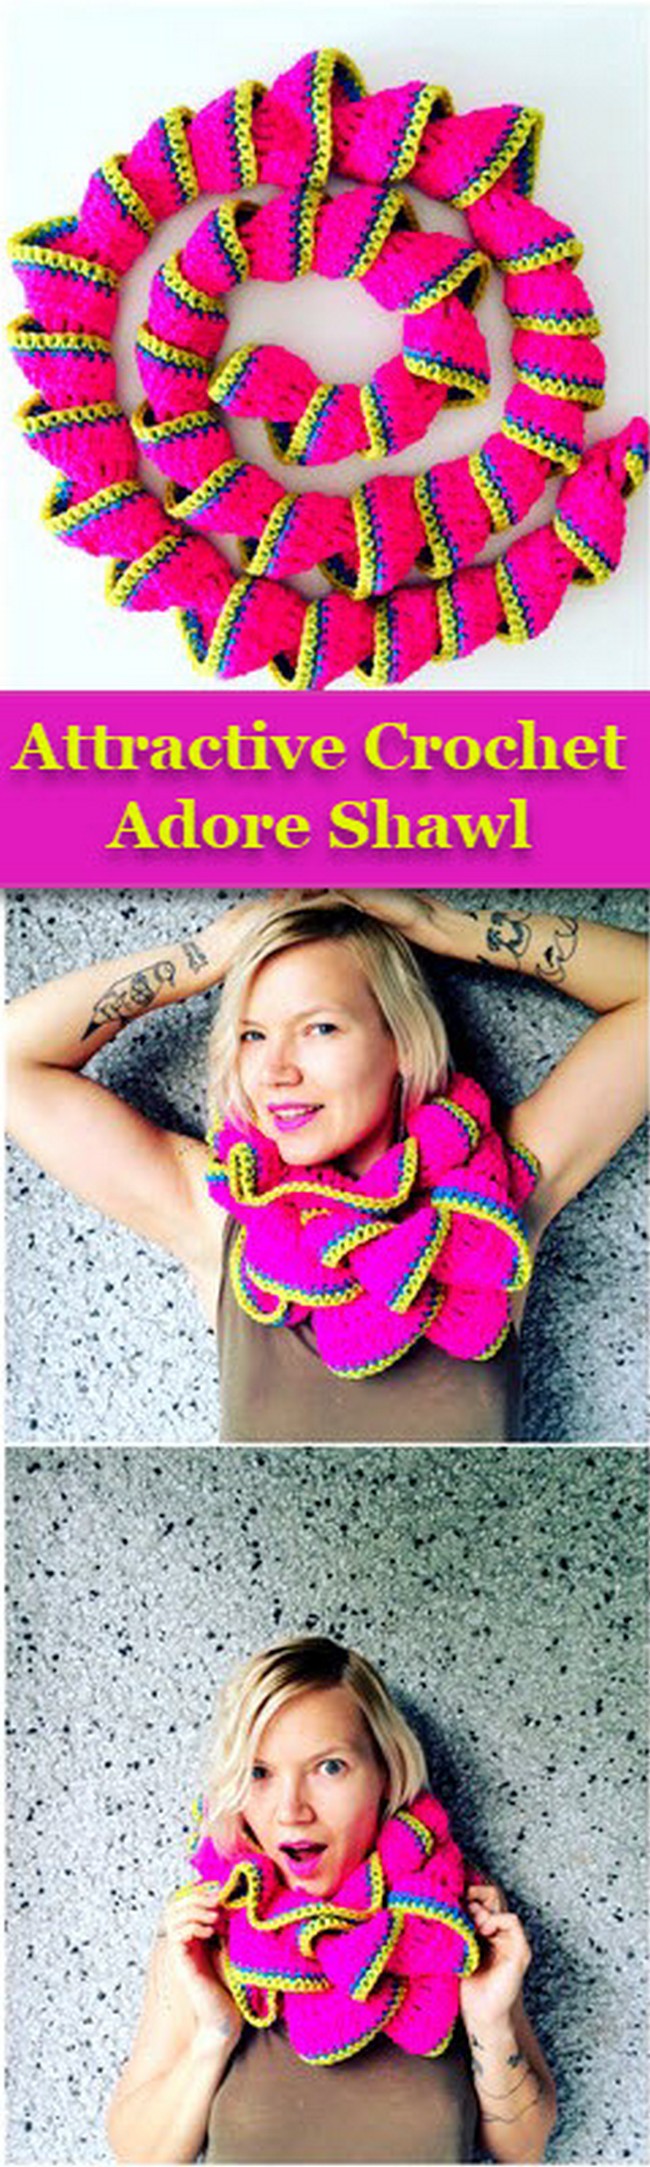 Attractive Crochet Adore Shawl